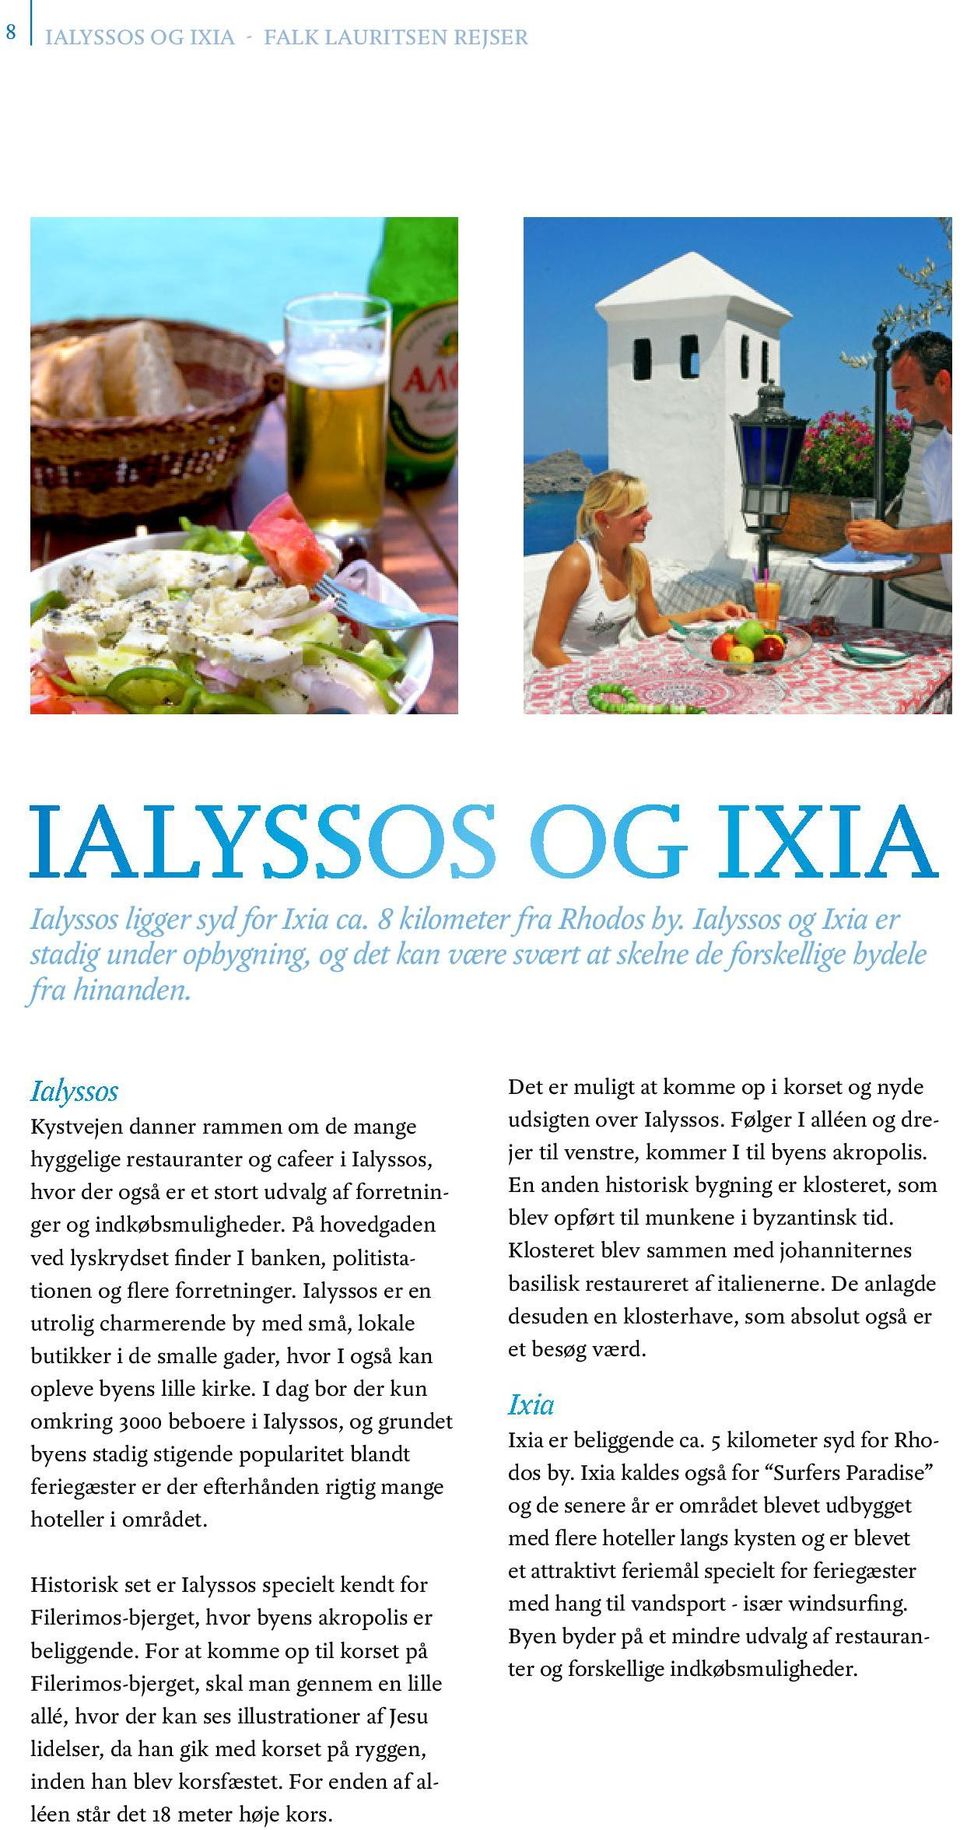 Ialyssos Kystvejen danner rammen om de mange hyggelige restauranter og cafeer i Ialyssos, hvor der også er et stort udvalg af forretninger og indkøbsmuligheder.